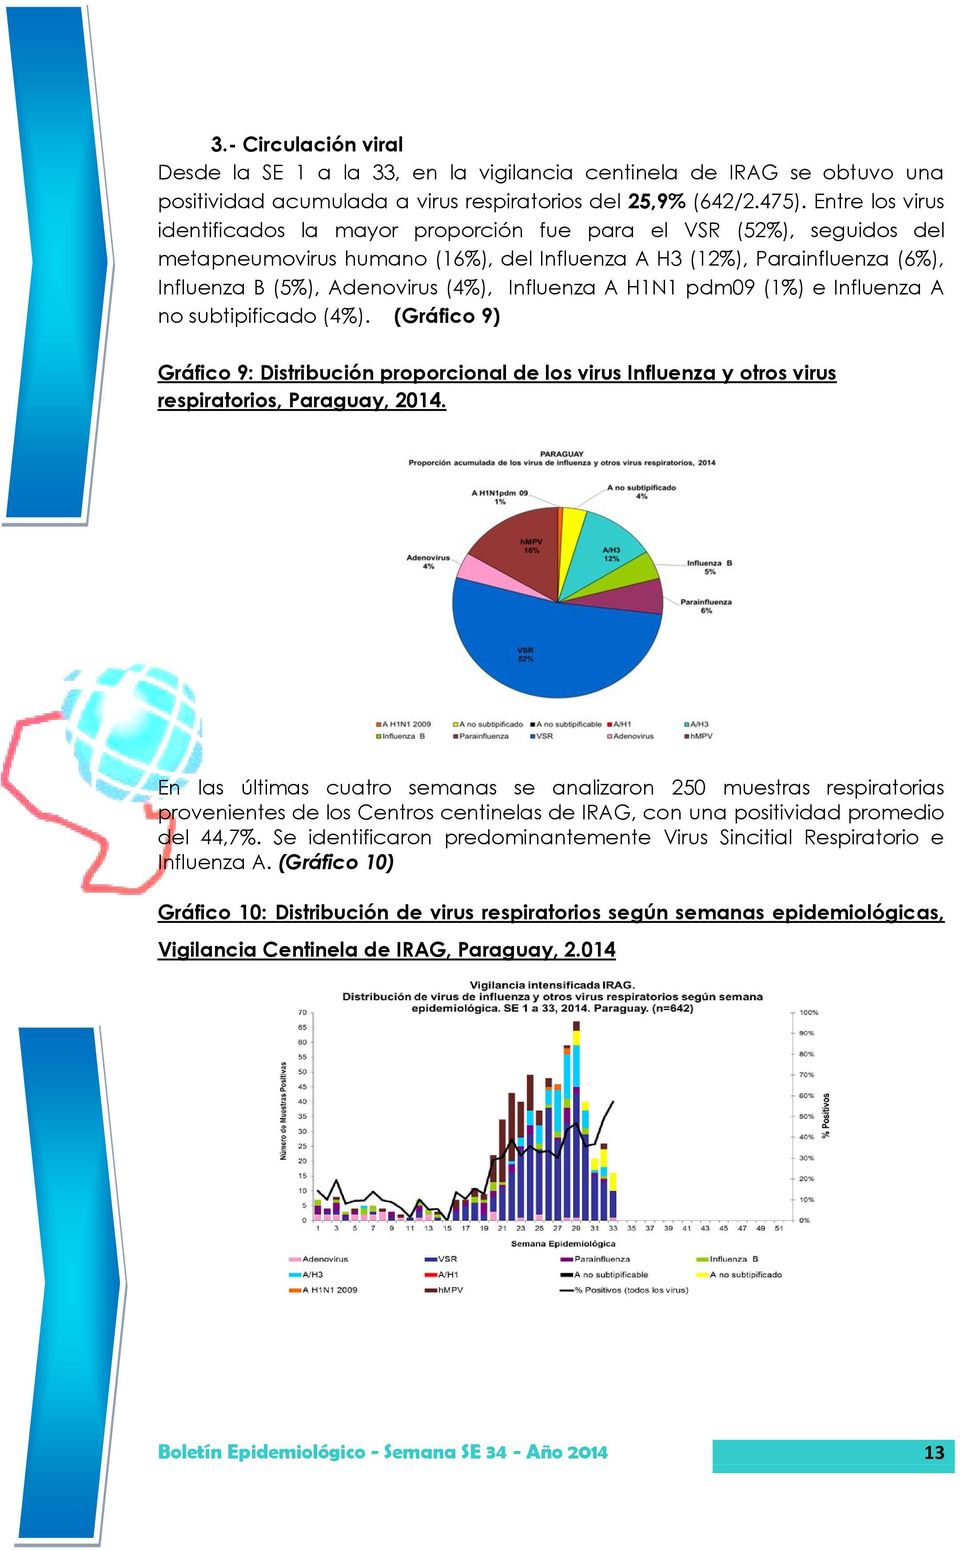 Influenza A H1N1 pdm09 (1%) e Influenza A no subtipificado (4%). (Gráfico 9) Gráfico 9: Distribución proporcional de los virus Influenza y otros virus respiratorios, Paraguay, 2014.